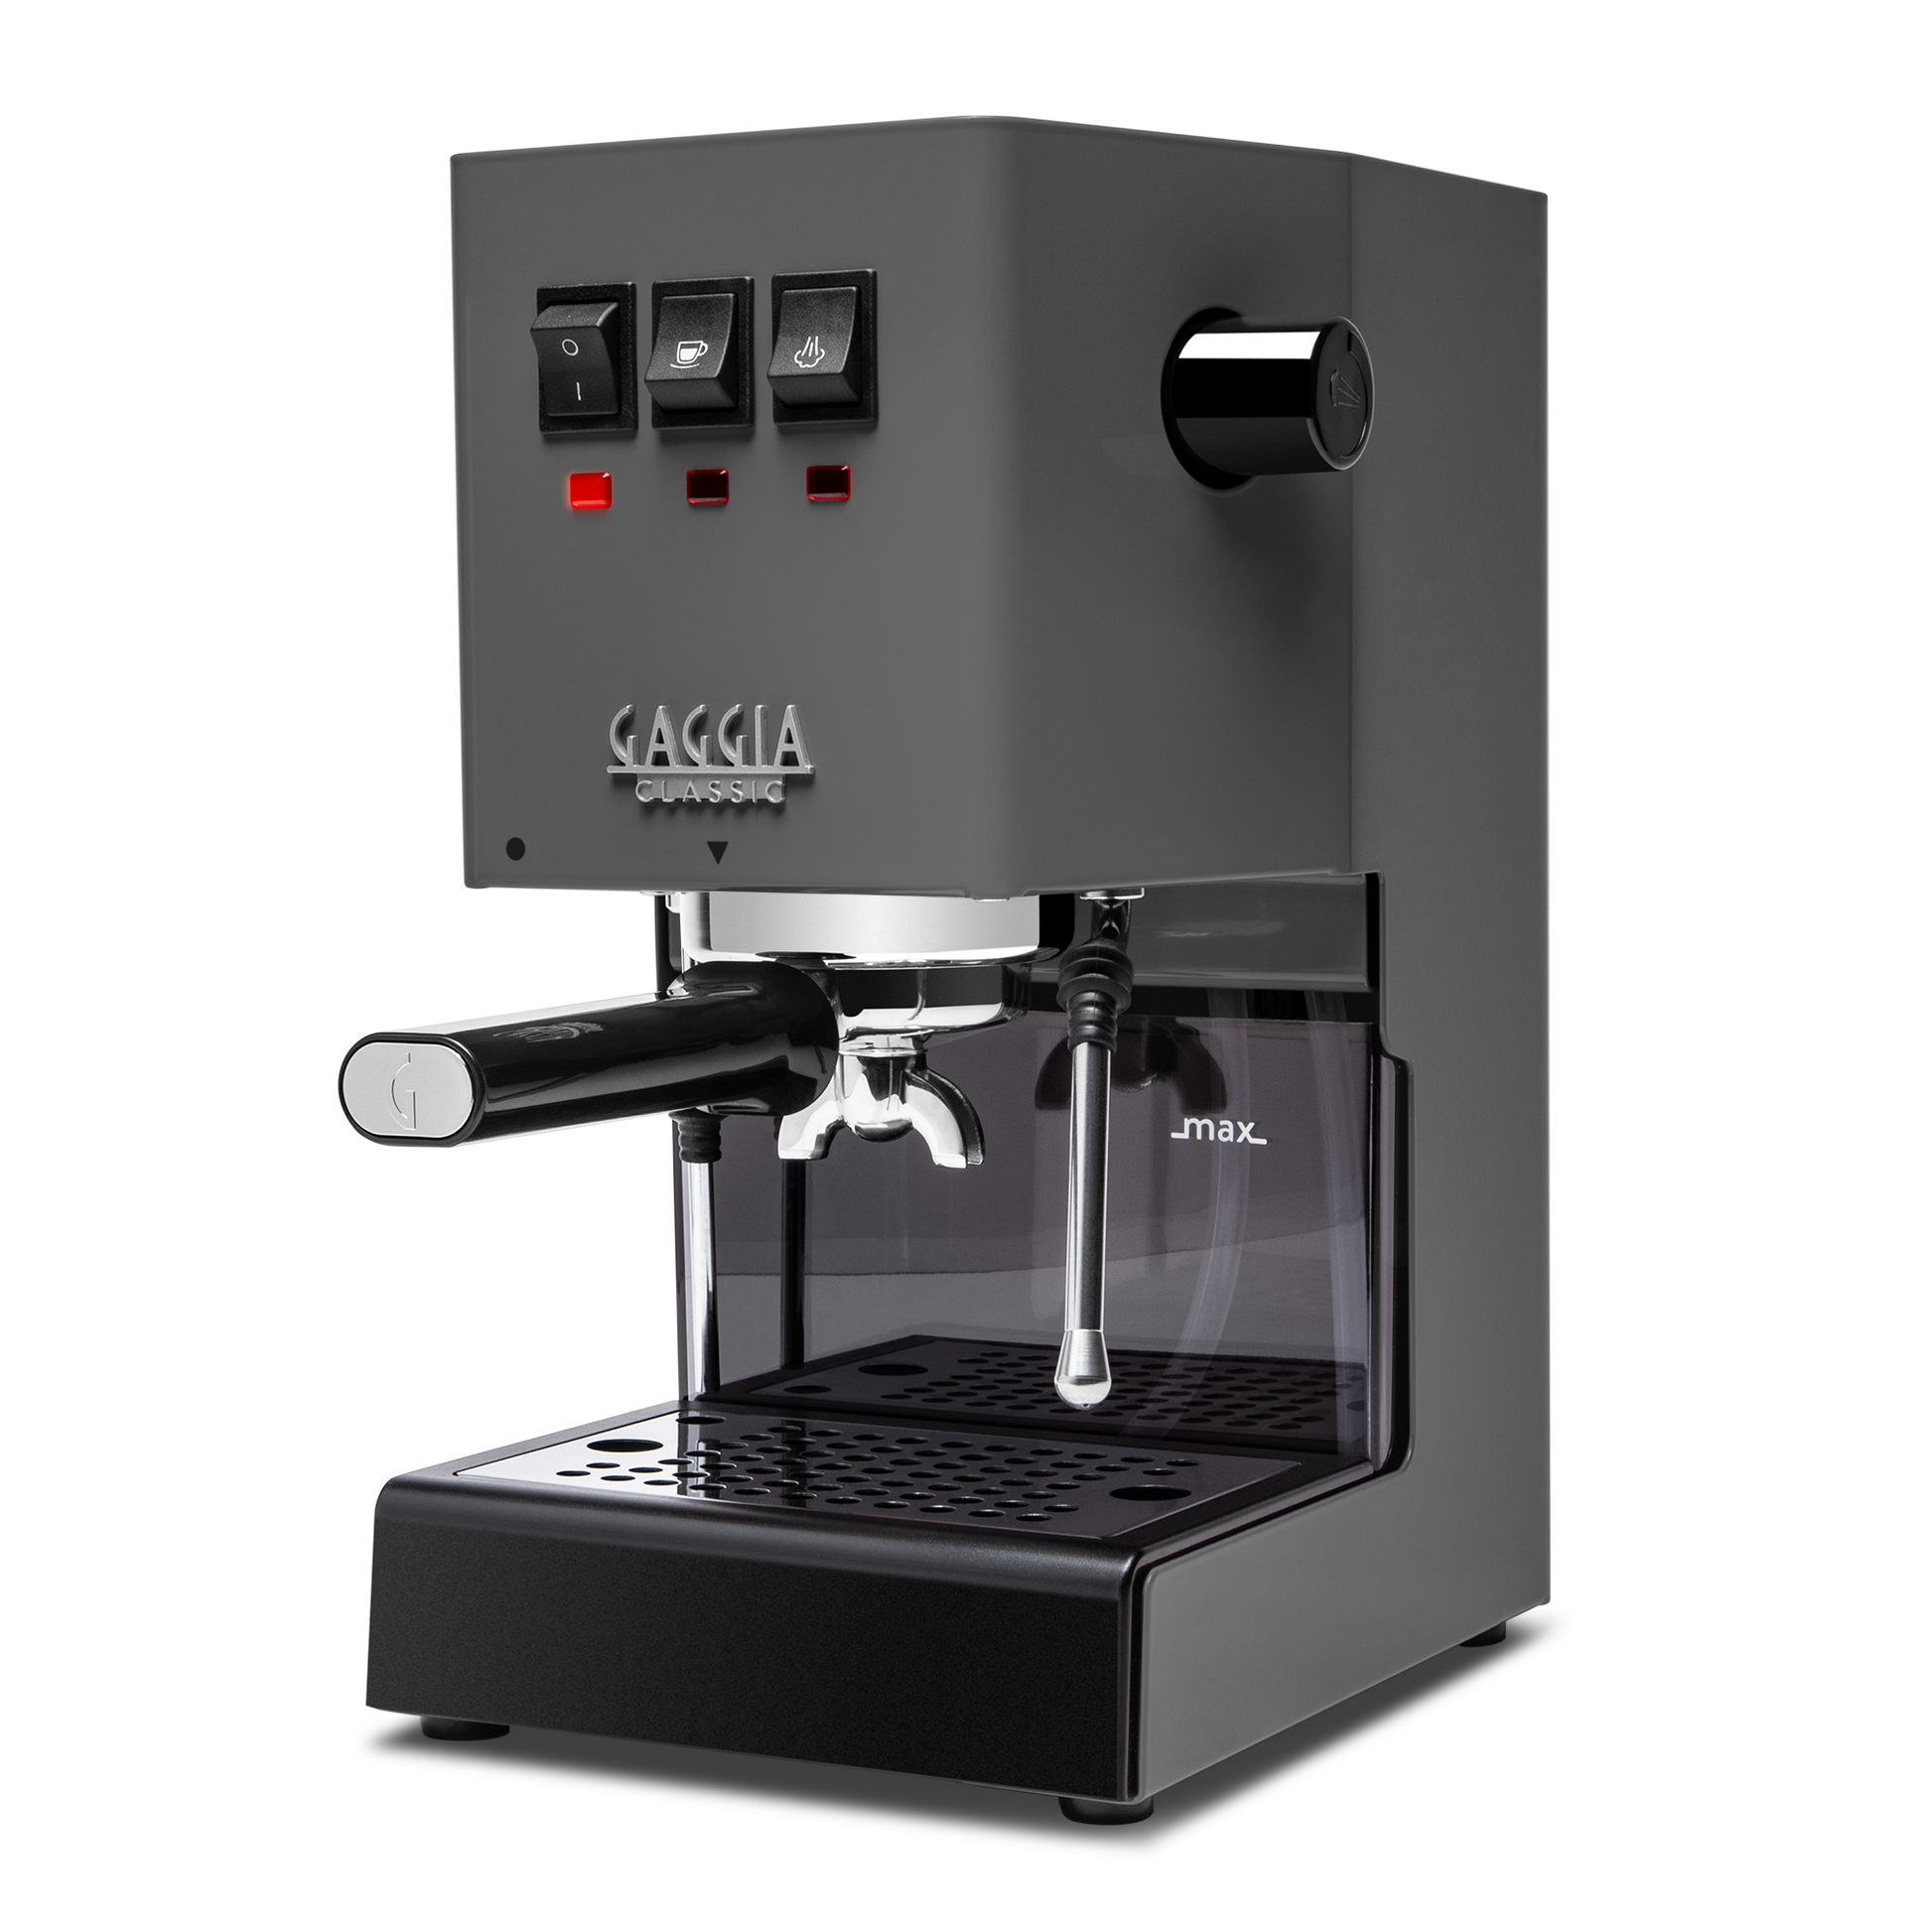 Gaggia Classic Evo Pro Espresso Machine